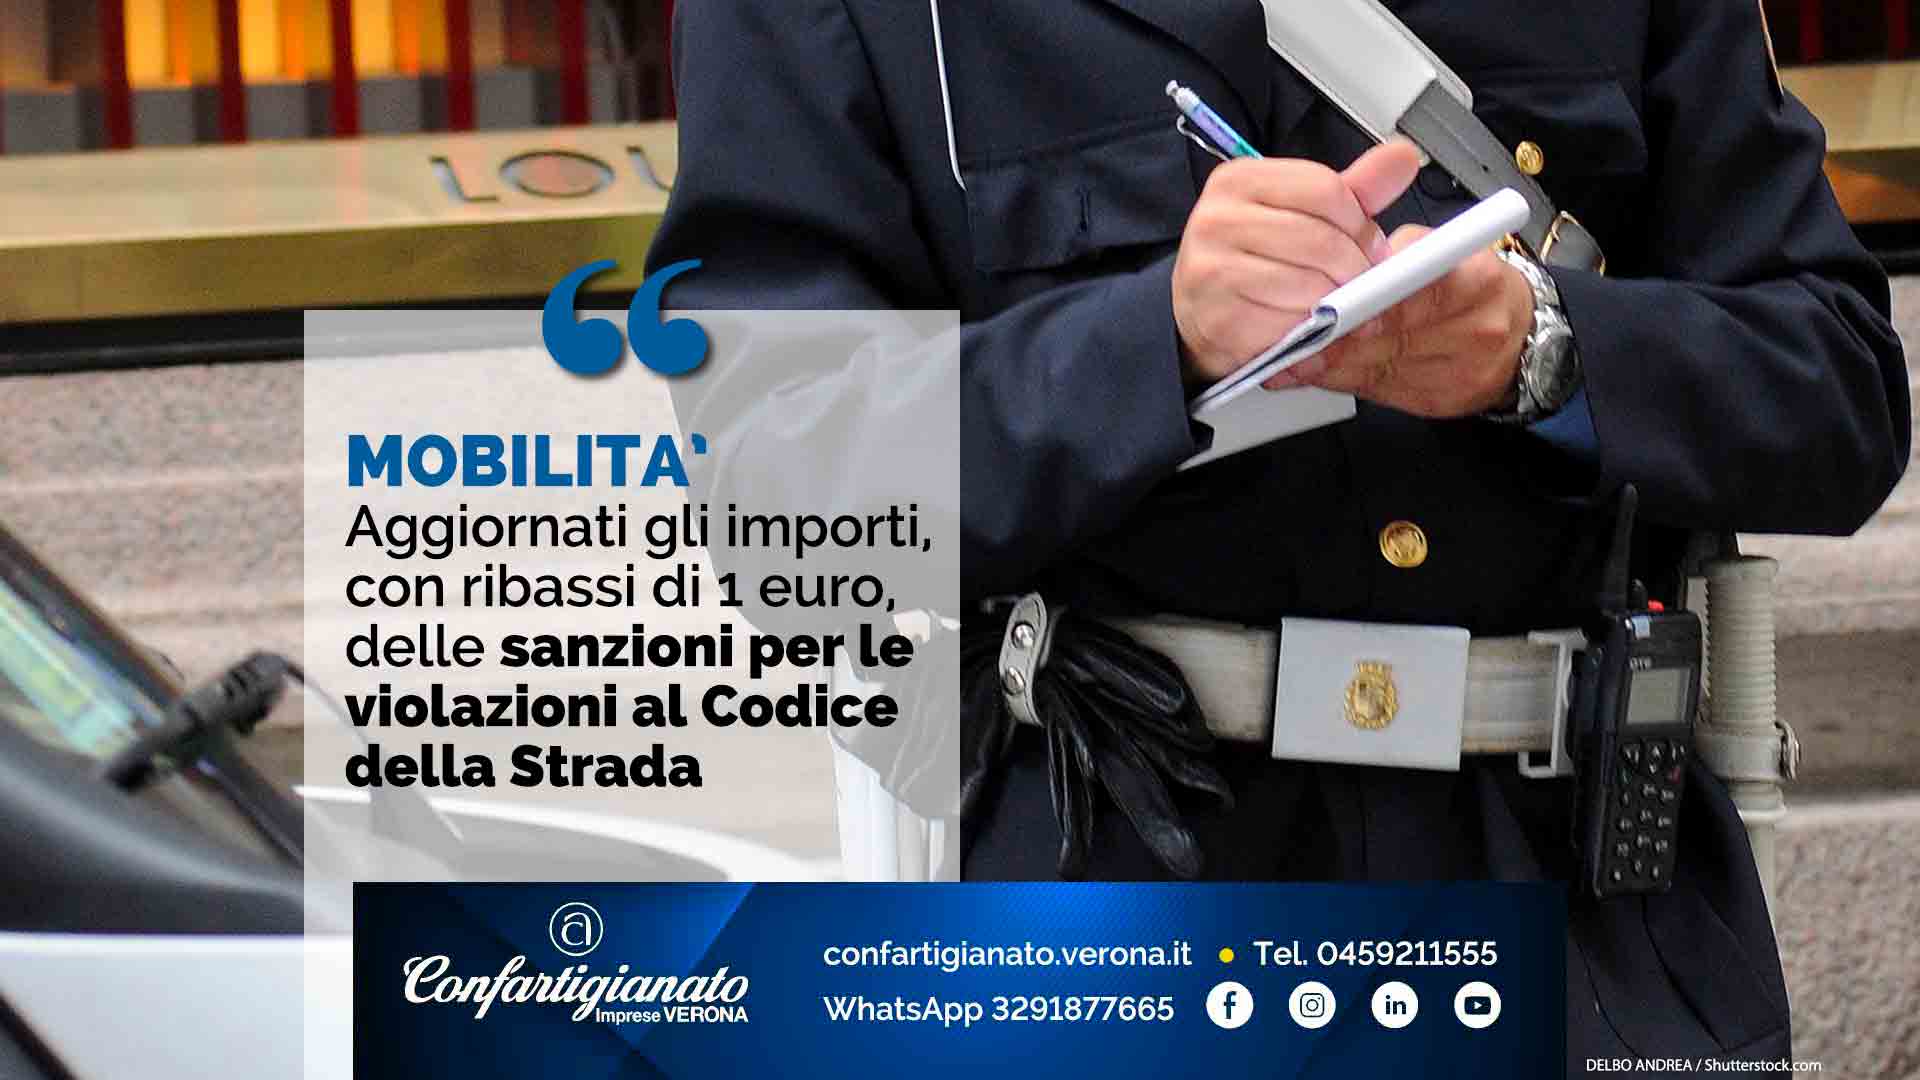 MOBILITA' – Aggiornati gli importi, con ribassi di 1 euro, delle sanzioni per le violazioni al Codice della Strada